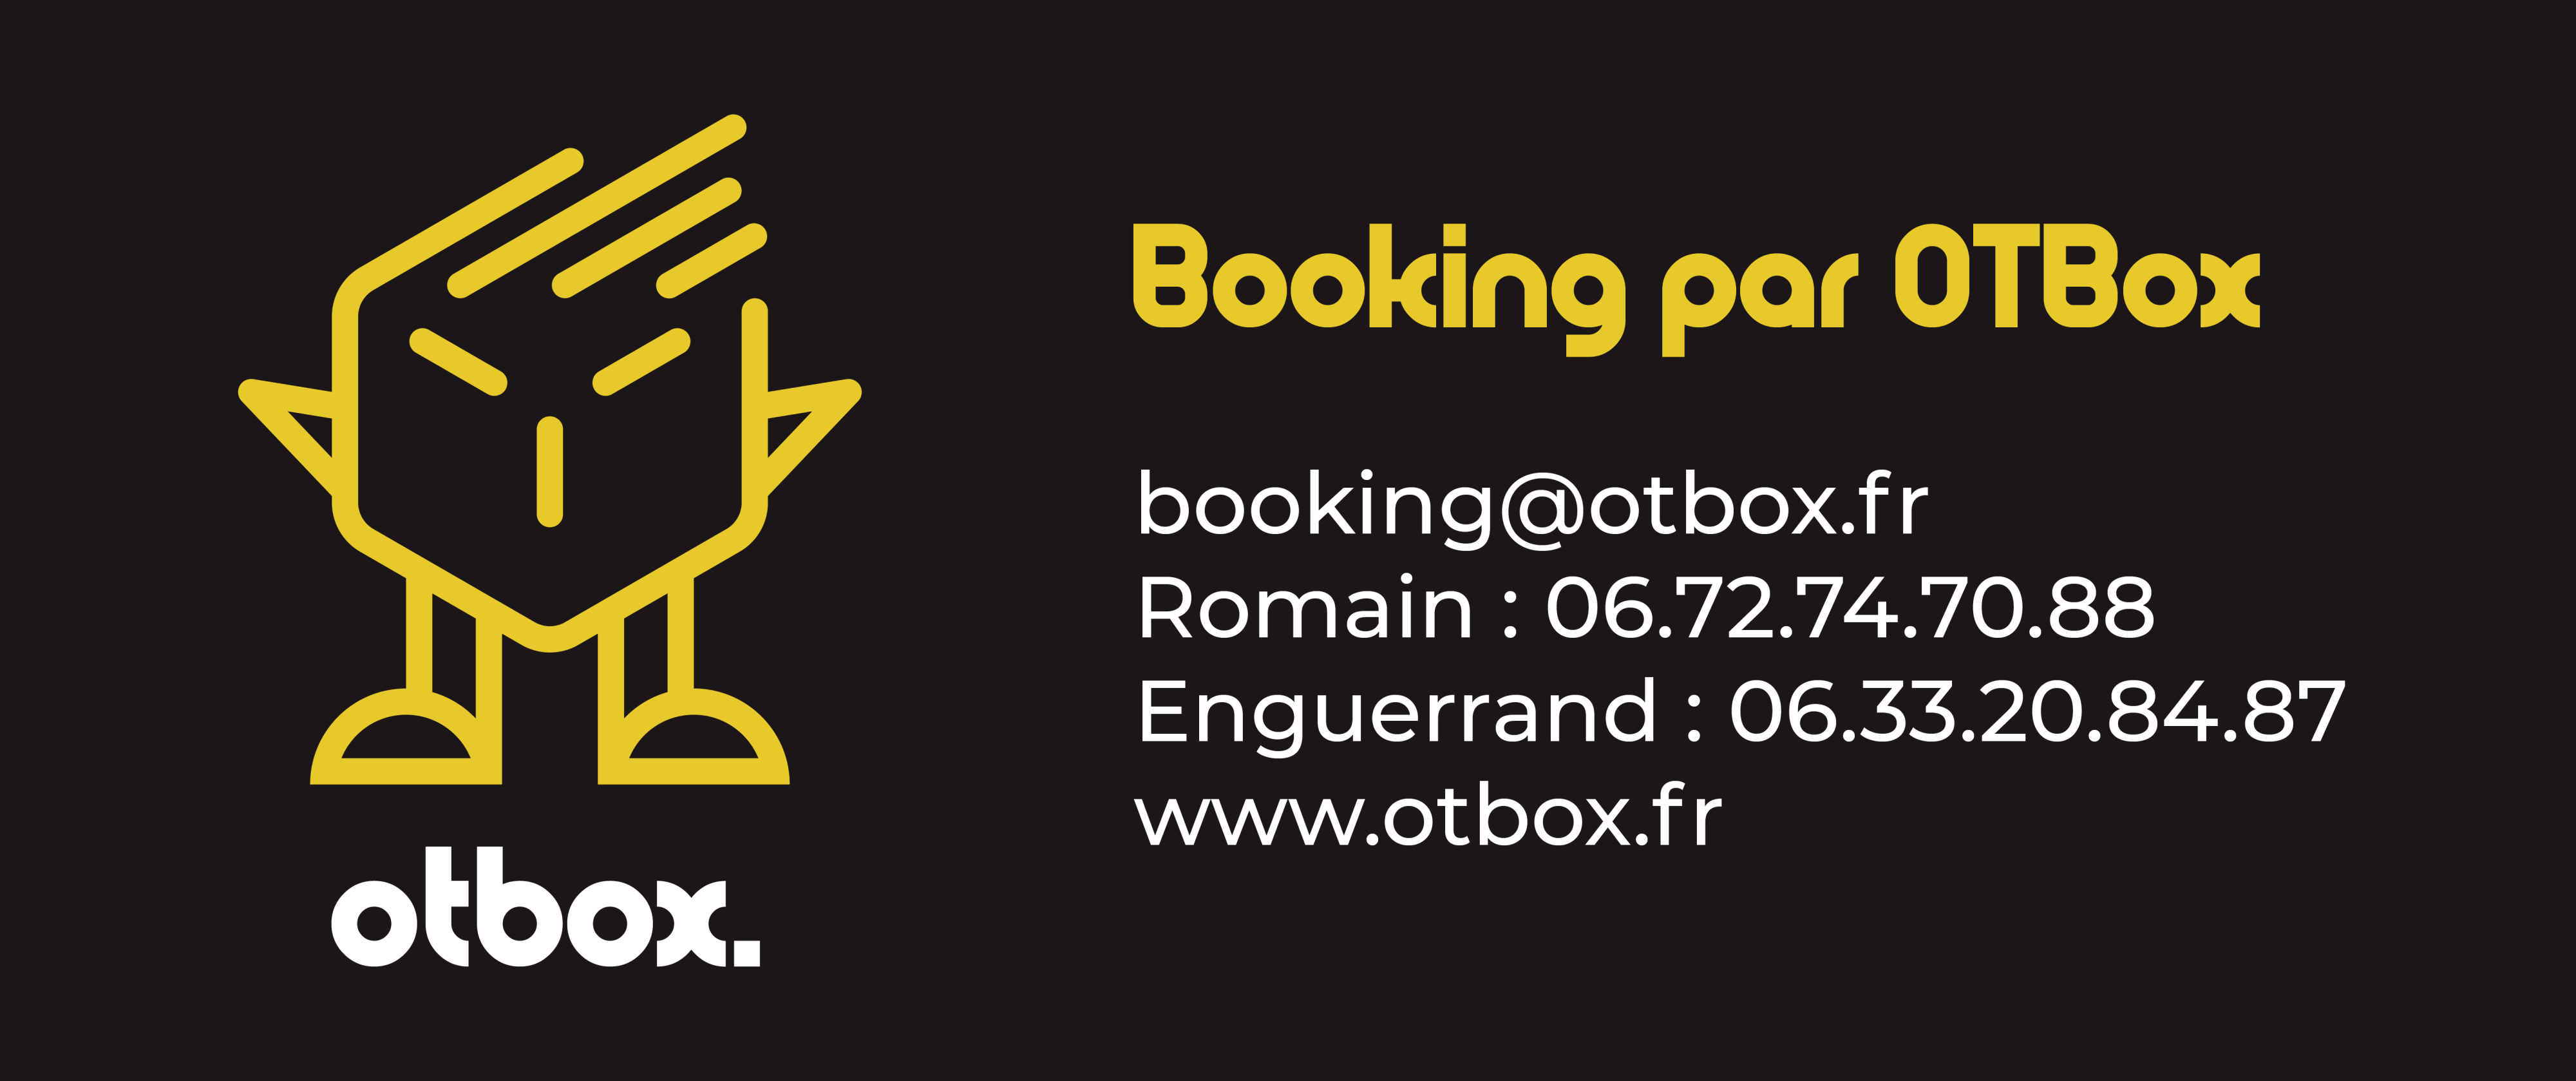 Lamuzgueule - Booking par OTBox